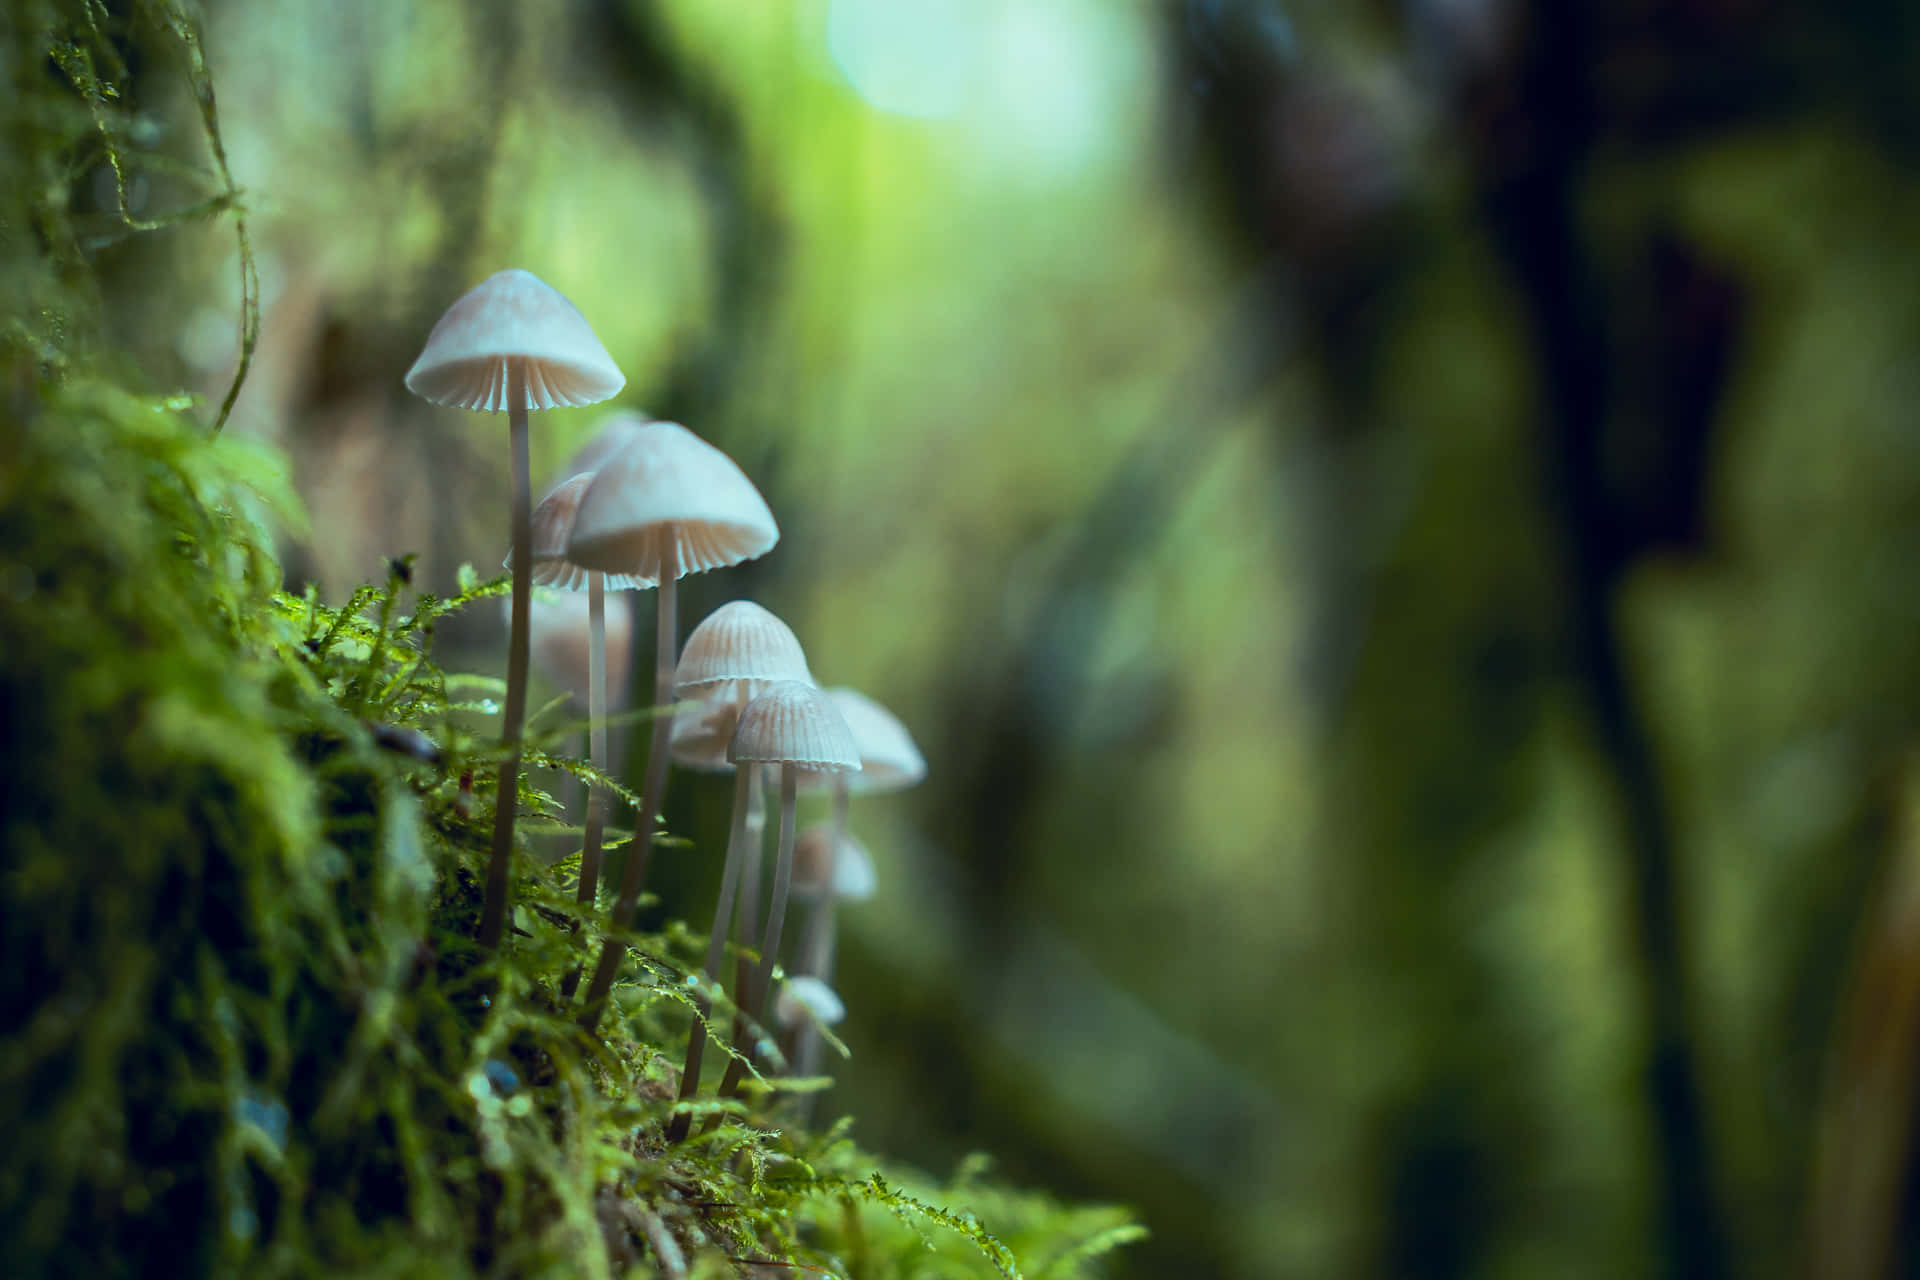 Billeder af svampe pryder dette fantasifulde tapet.